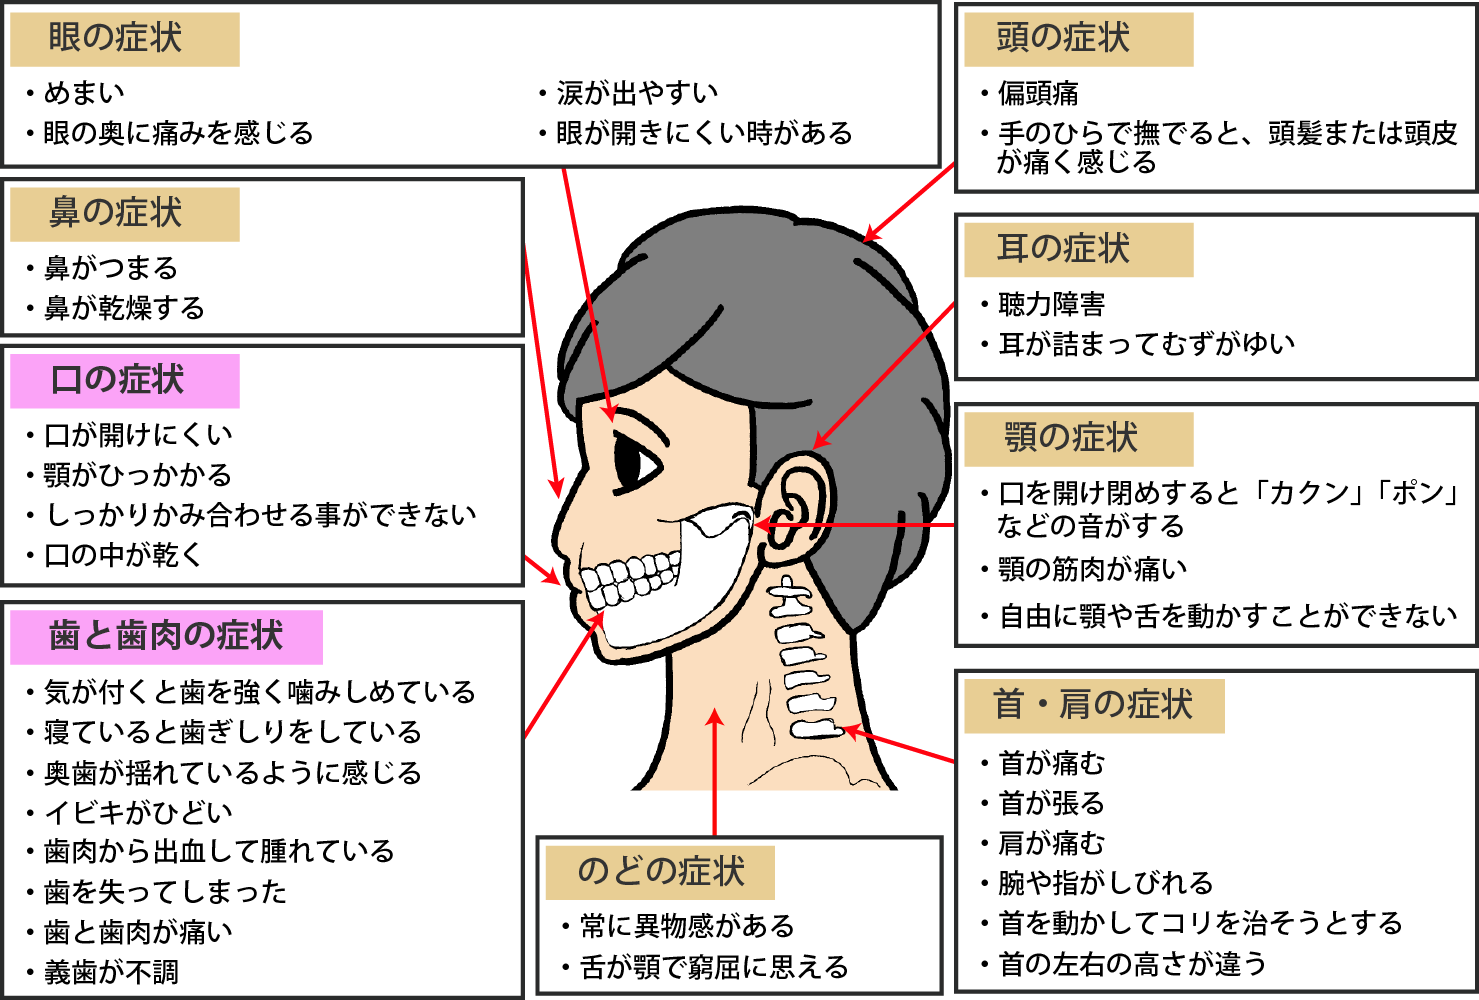 横浜の歯科・歯医者 横浜山手デンタルクリニック 口腔内が原因で起こるからの病気